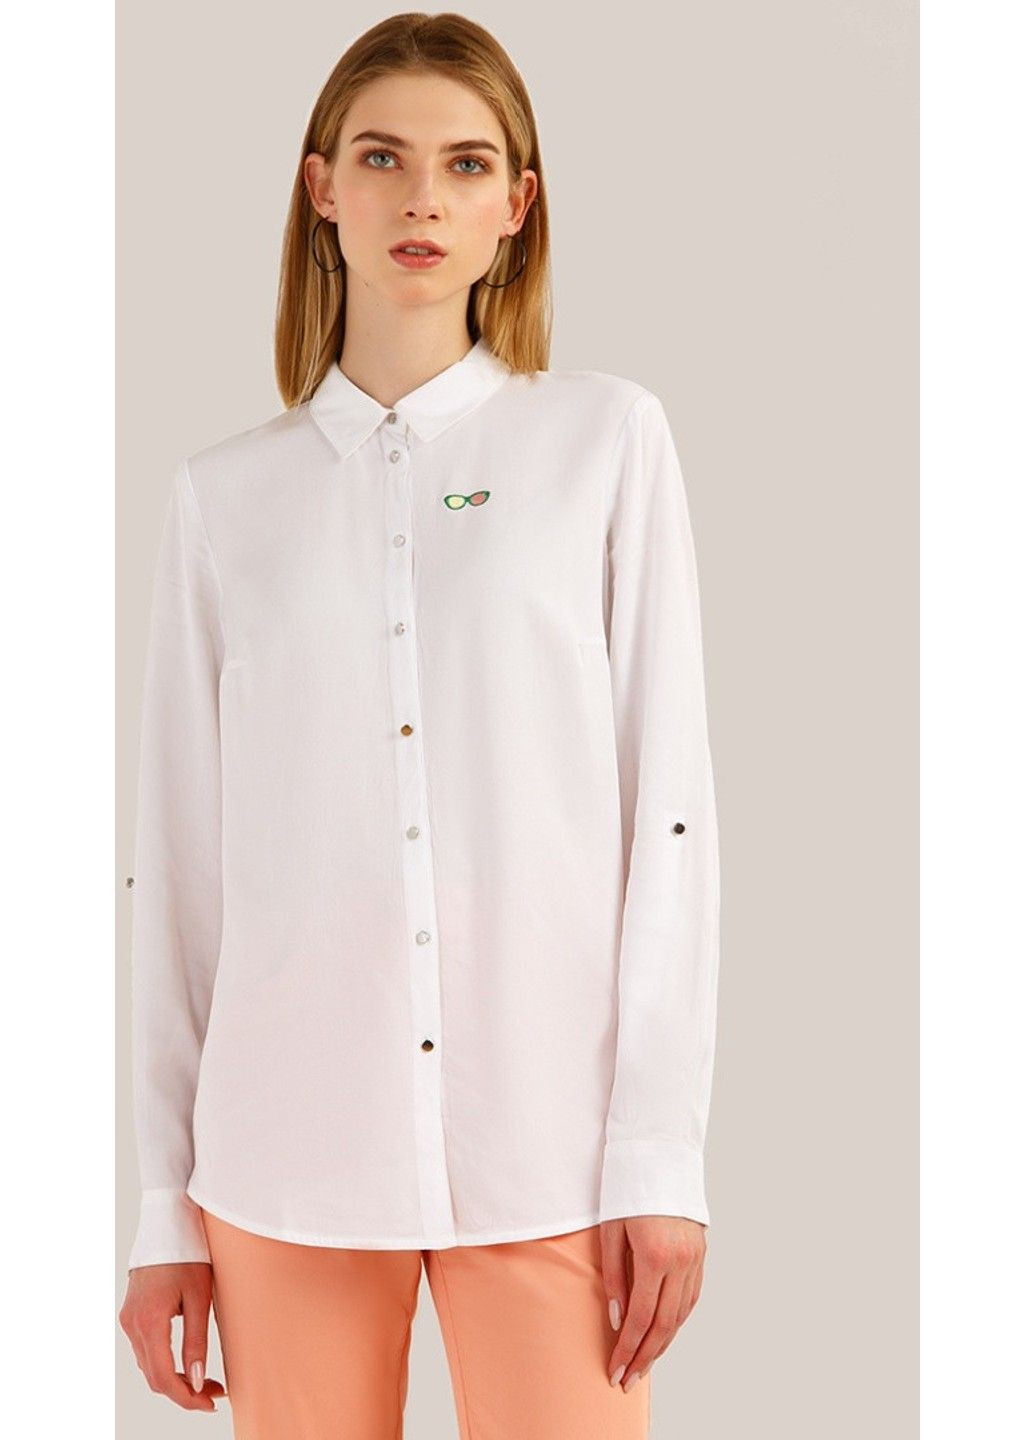 Біла літня сорочка s19-14010-201 Finn Flare